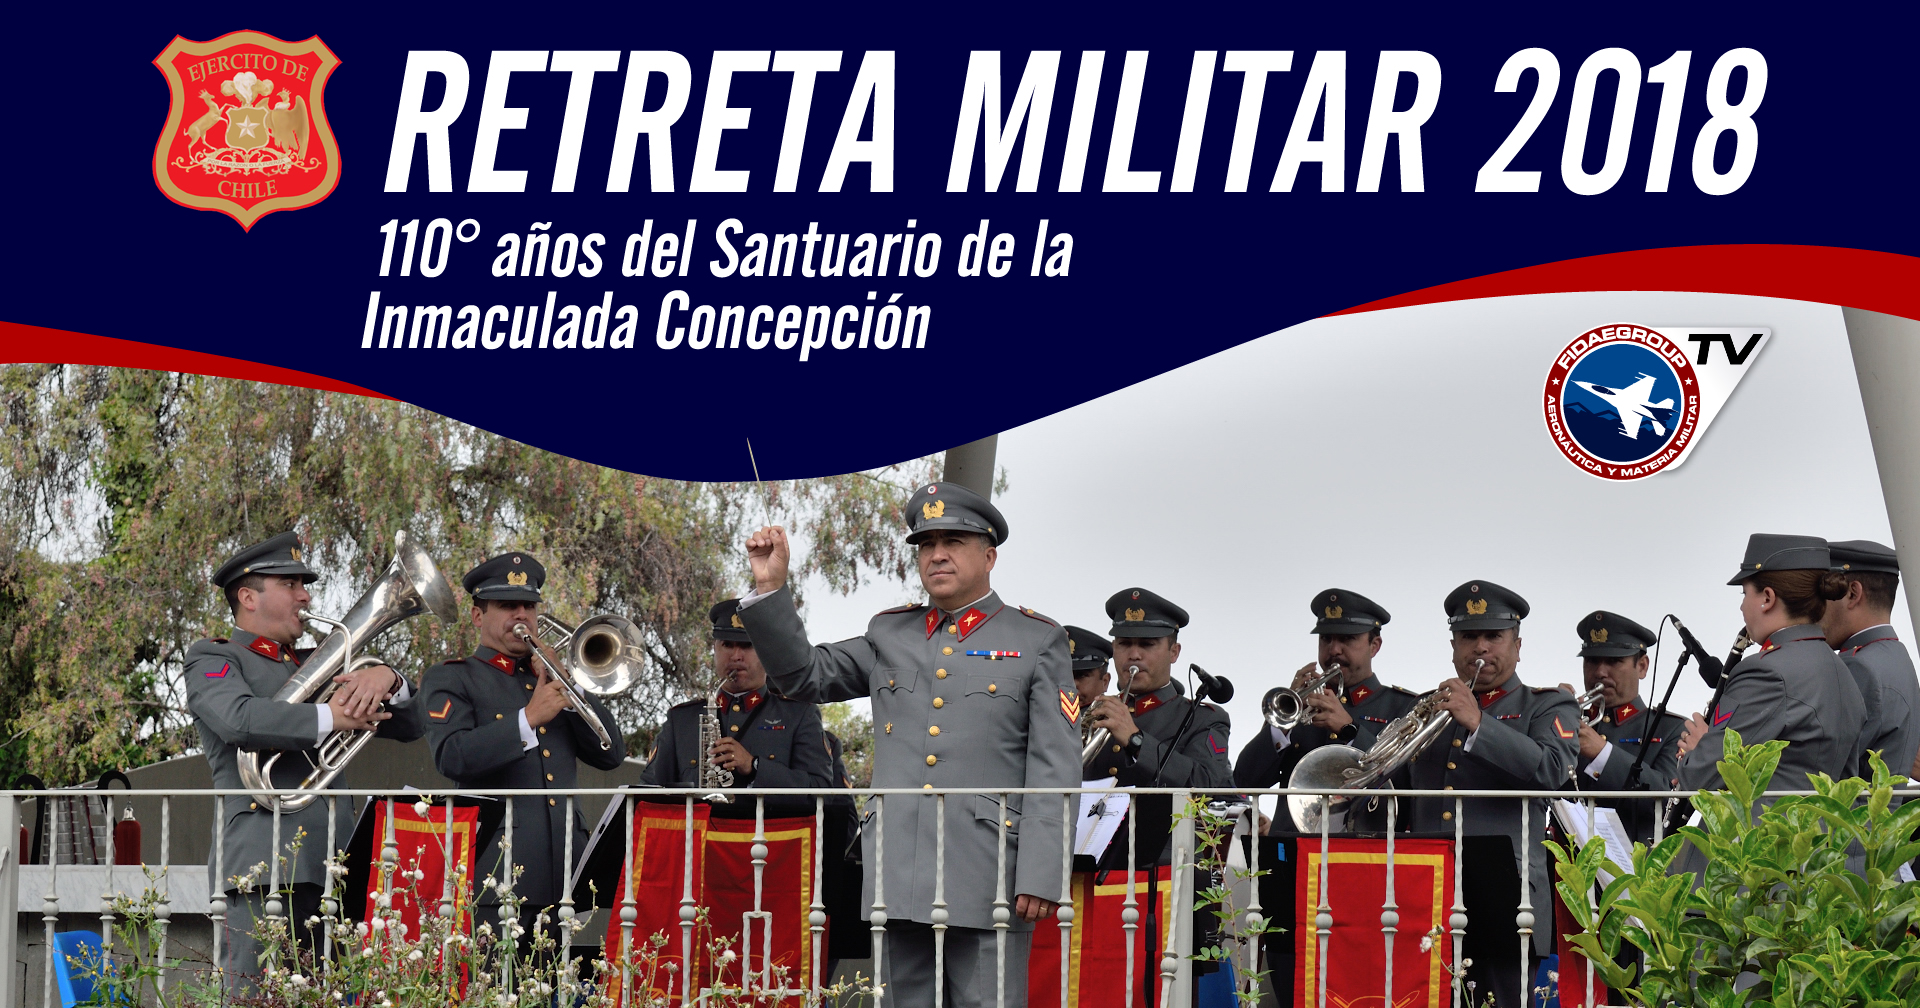 Retreta Militar 2018, 110° años Santuario Inmaculada Concepción